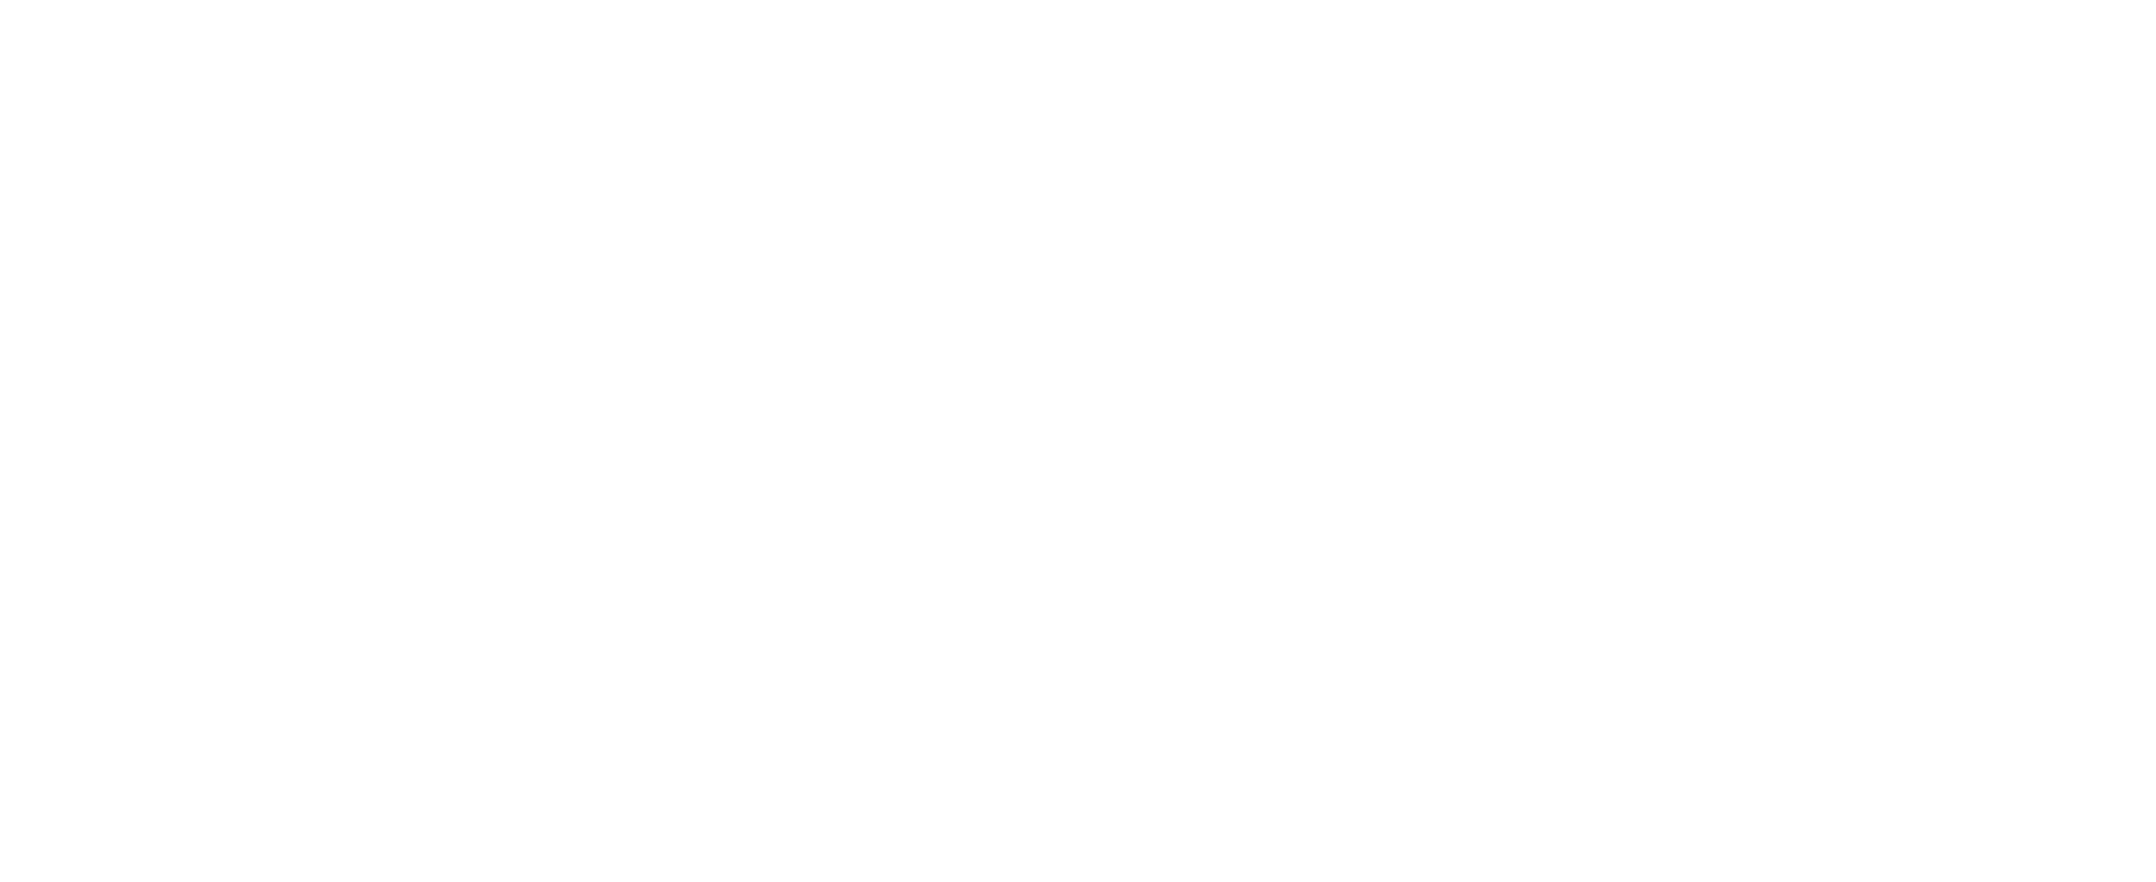 Logo La Clinique des Yeux LCDY